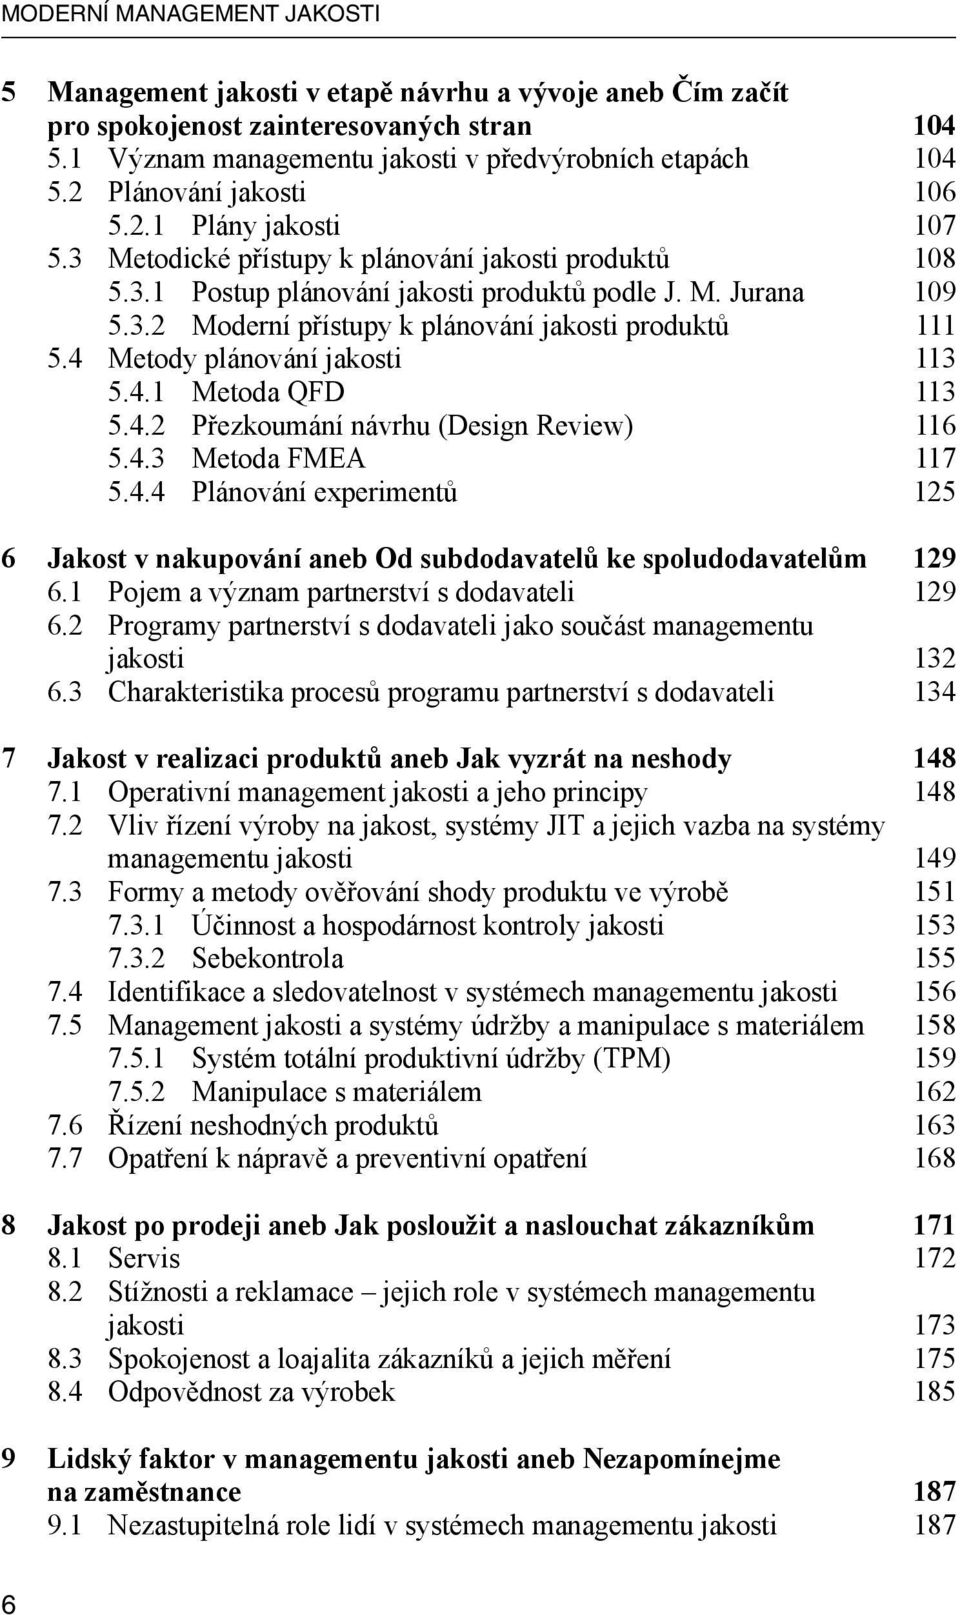 4 Metody plánování jakosti 113 5.4.1 Metoda QFD 113 5.4.2 Přezkoumání návrhu (Design Review) 116 5.4.3 Metoda FMEA 117 5.4.4 Plánování experimentů 125 6 Jakost v nakupování aneb Od subdodavatelů ke spoludodavatelům 129 6.